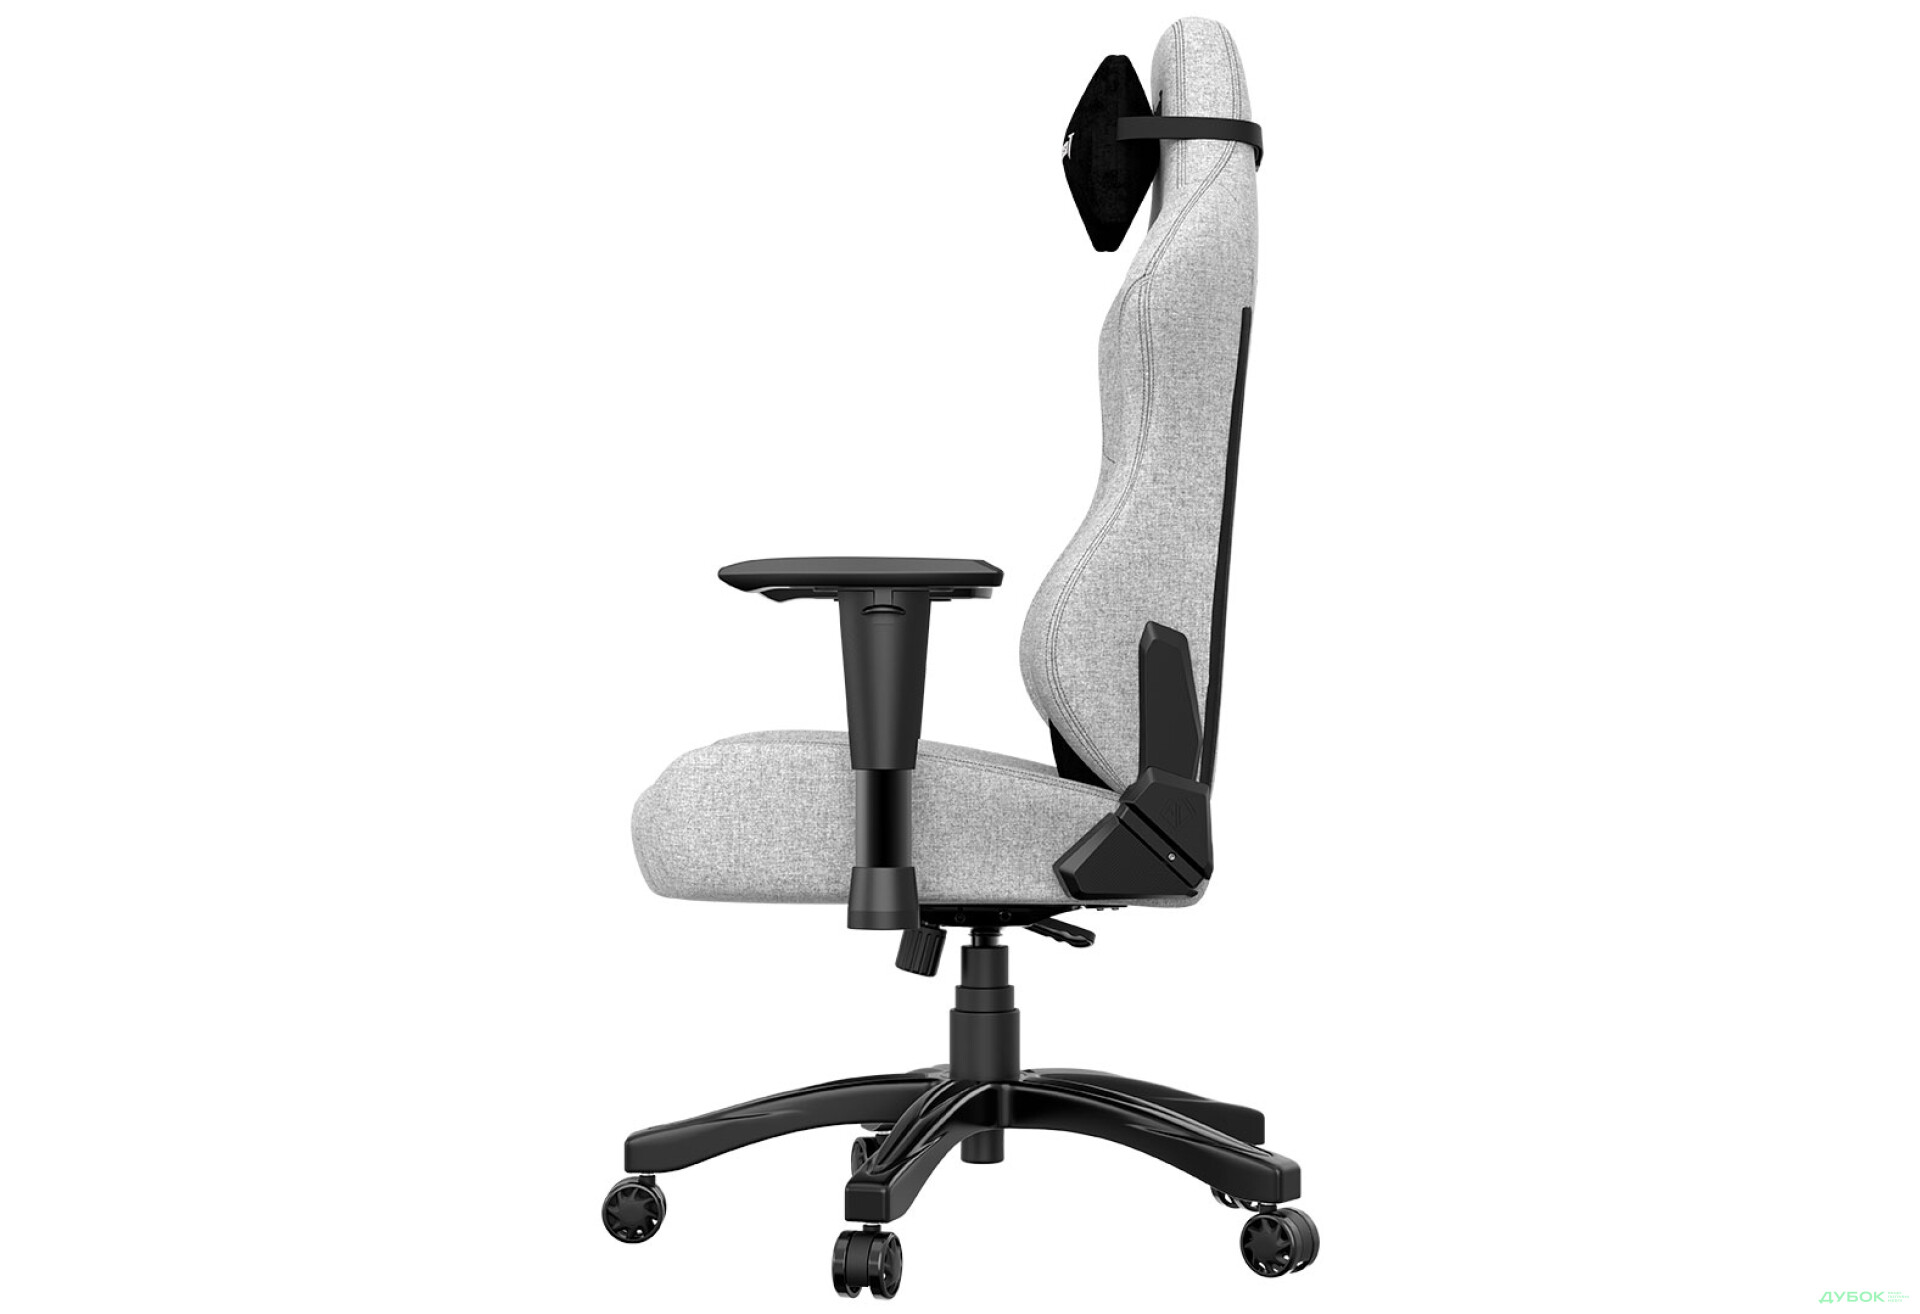 Фото 8 - Компьютерное кресло Anda Seat Phantom 3 70x55x134 см игровое, серое